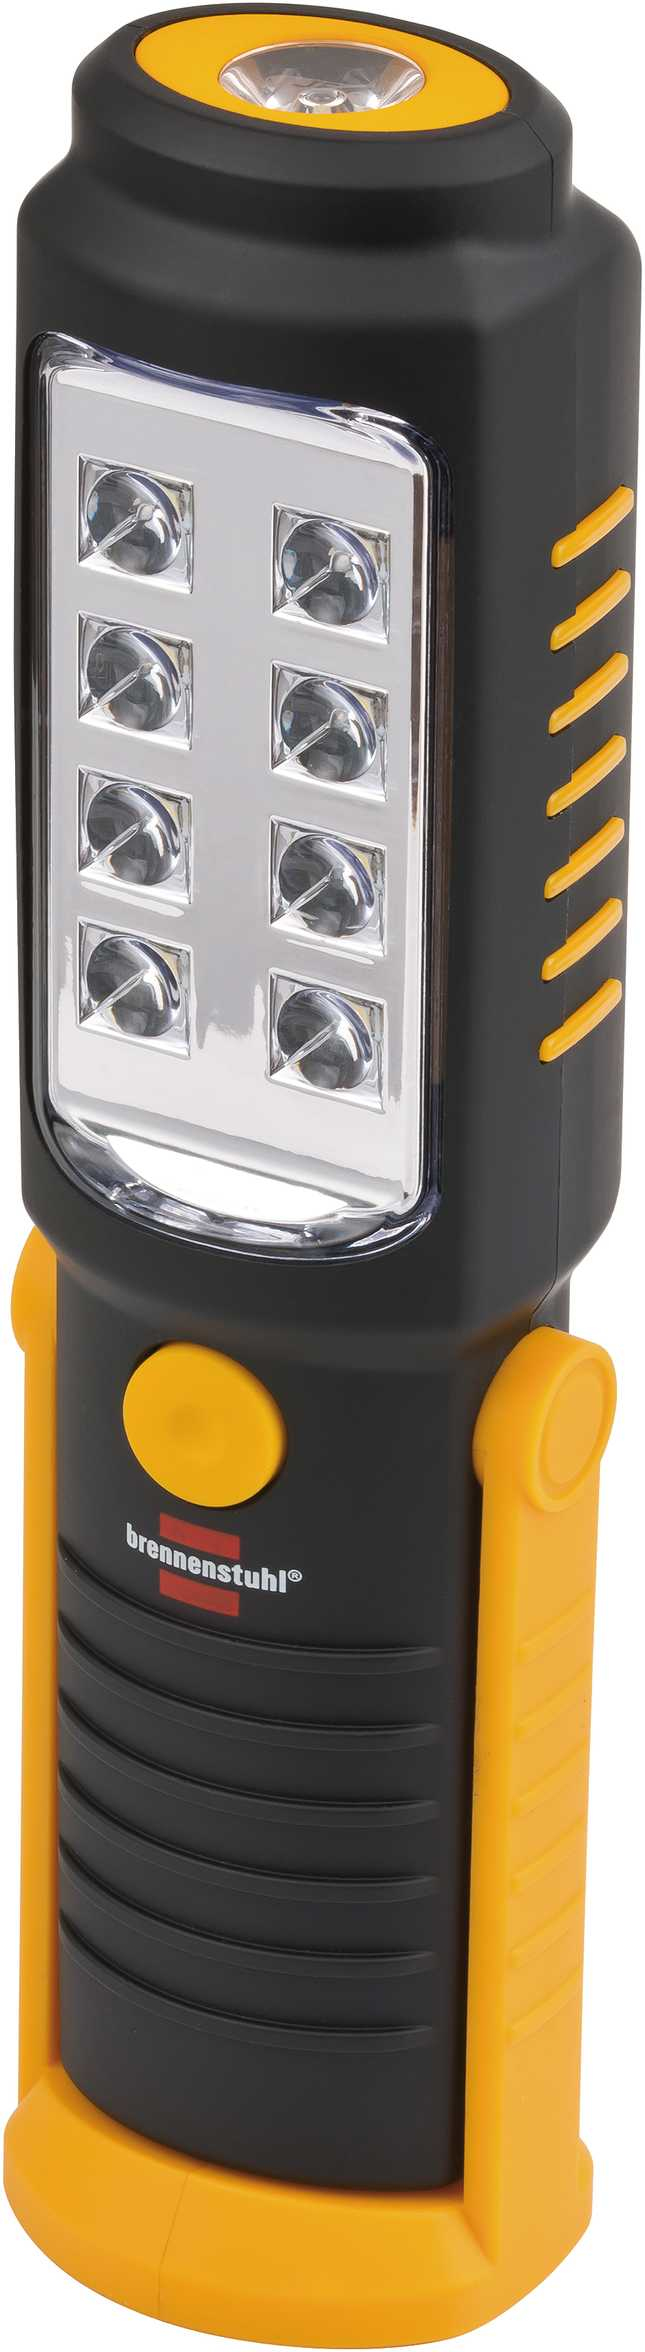 Brennenstuhl 1175410010 - Hand-Blinklicht - Schwarz - Gelb - IP20 - -10 - 40 °C - LED - 8 Lampen